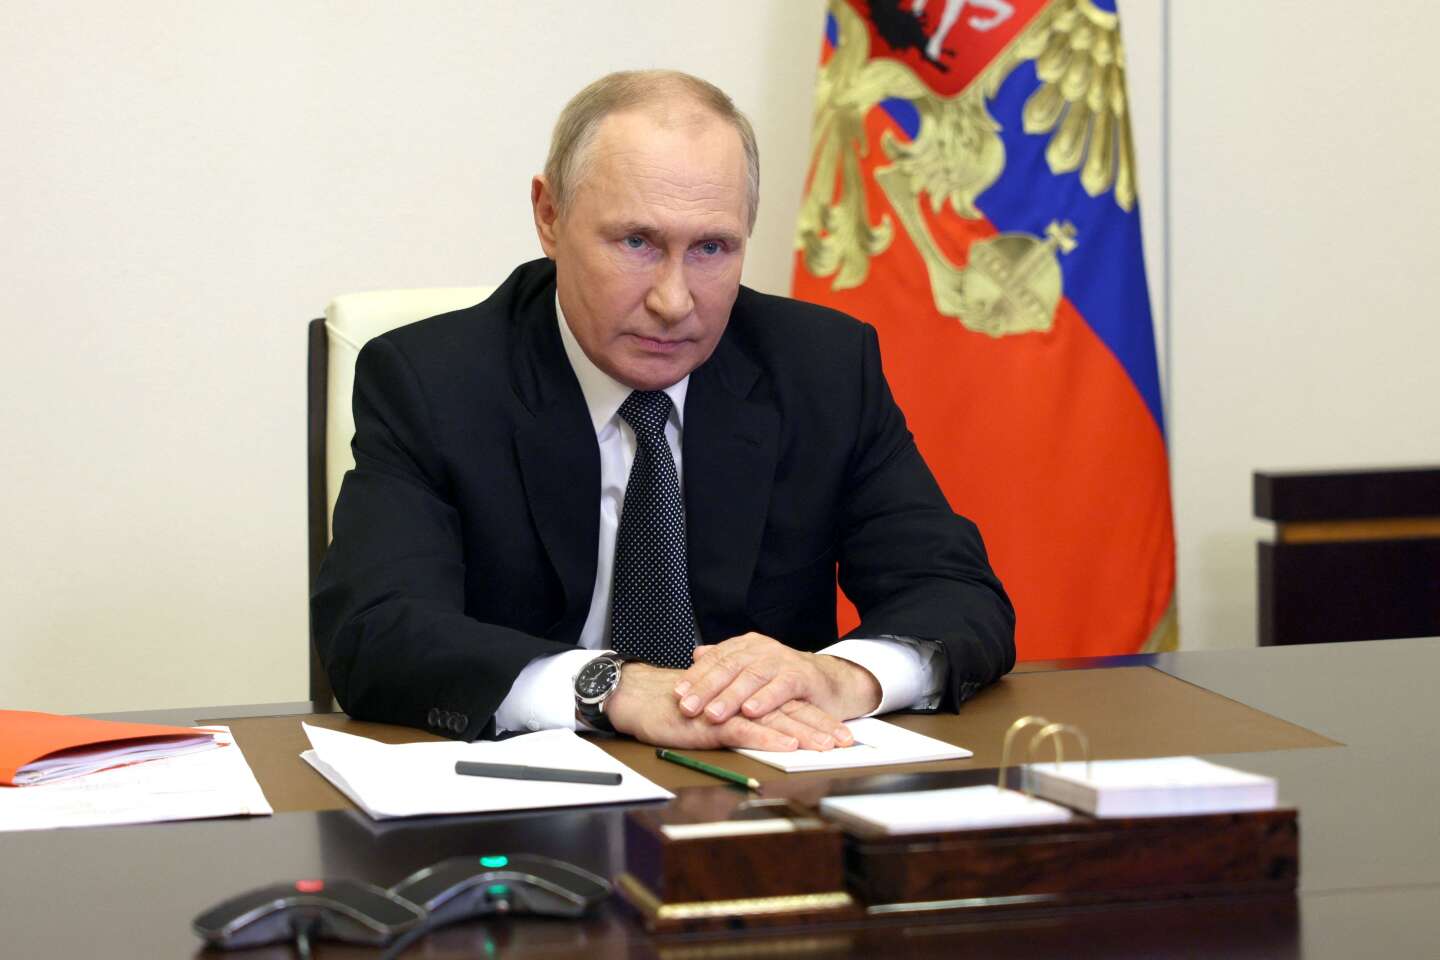 Vladimir Putin instituted martial law in the annexed territories